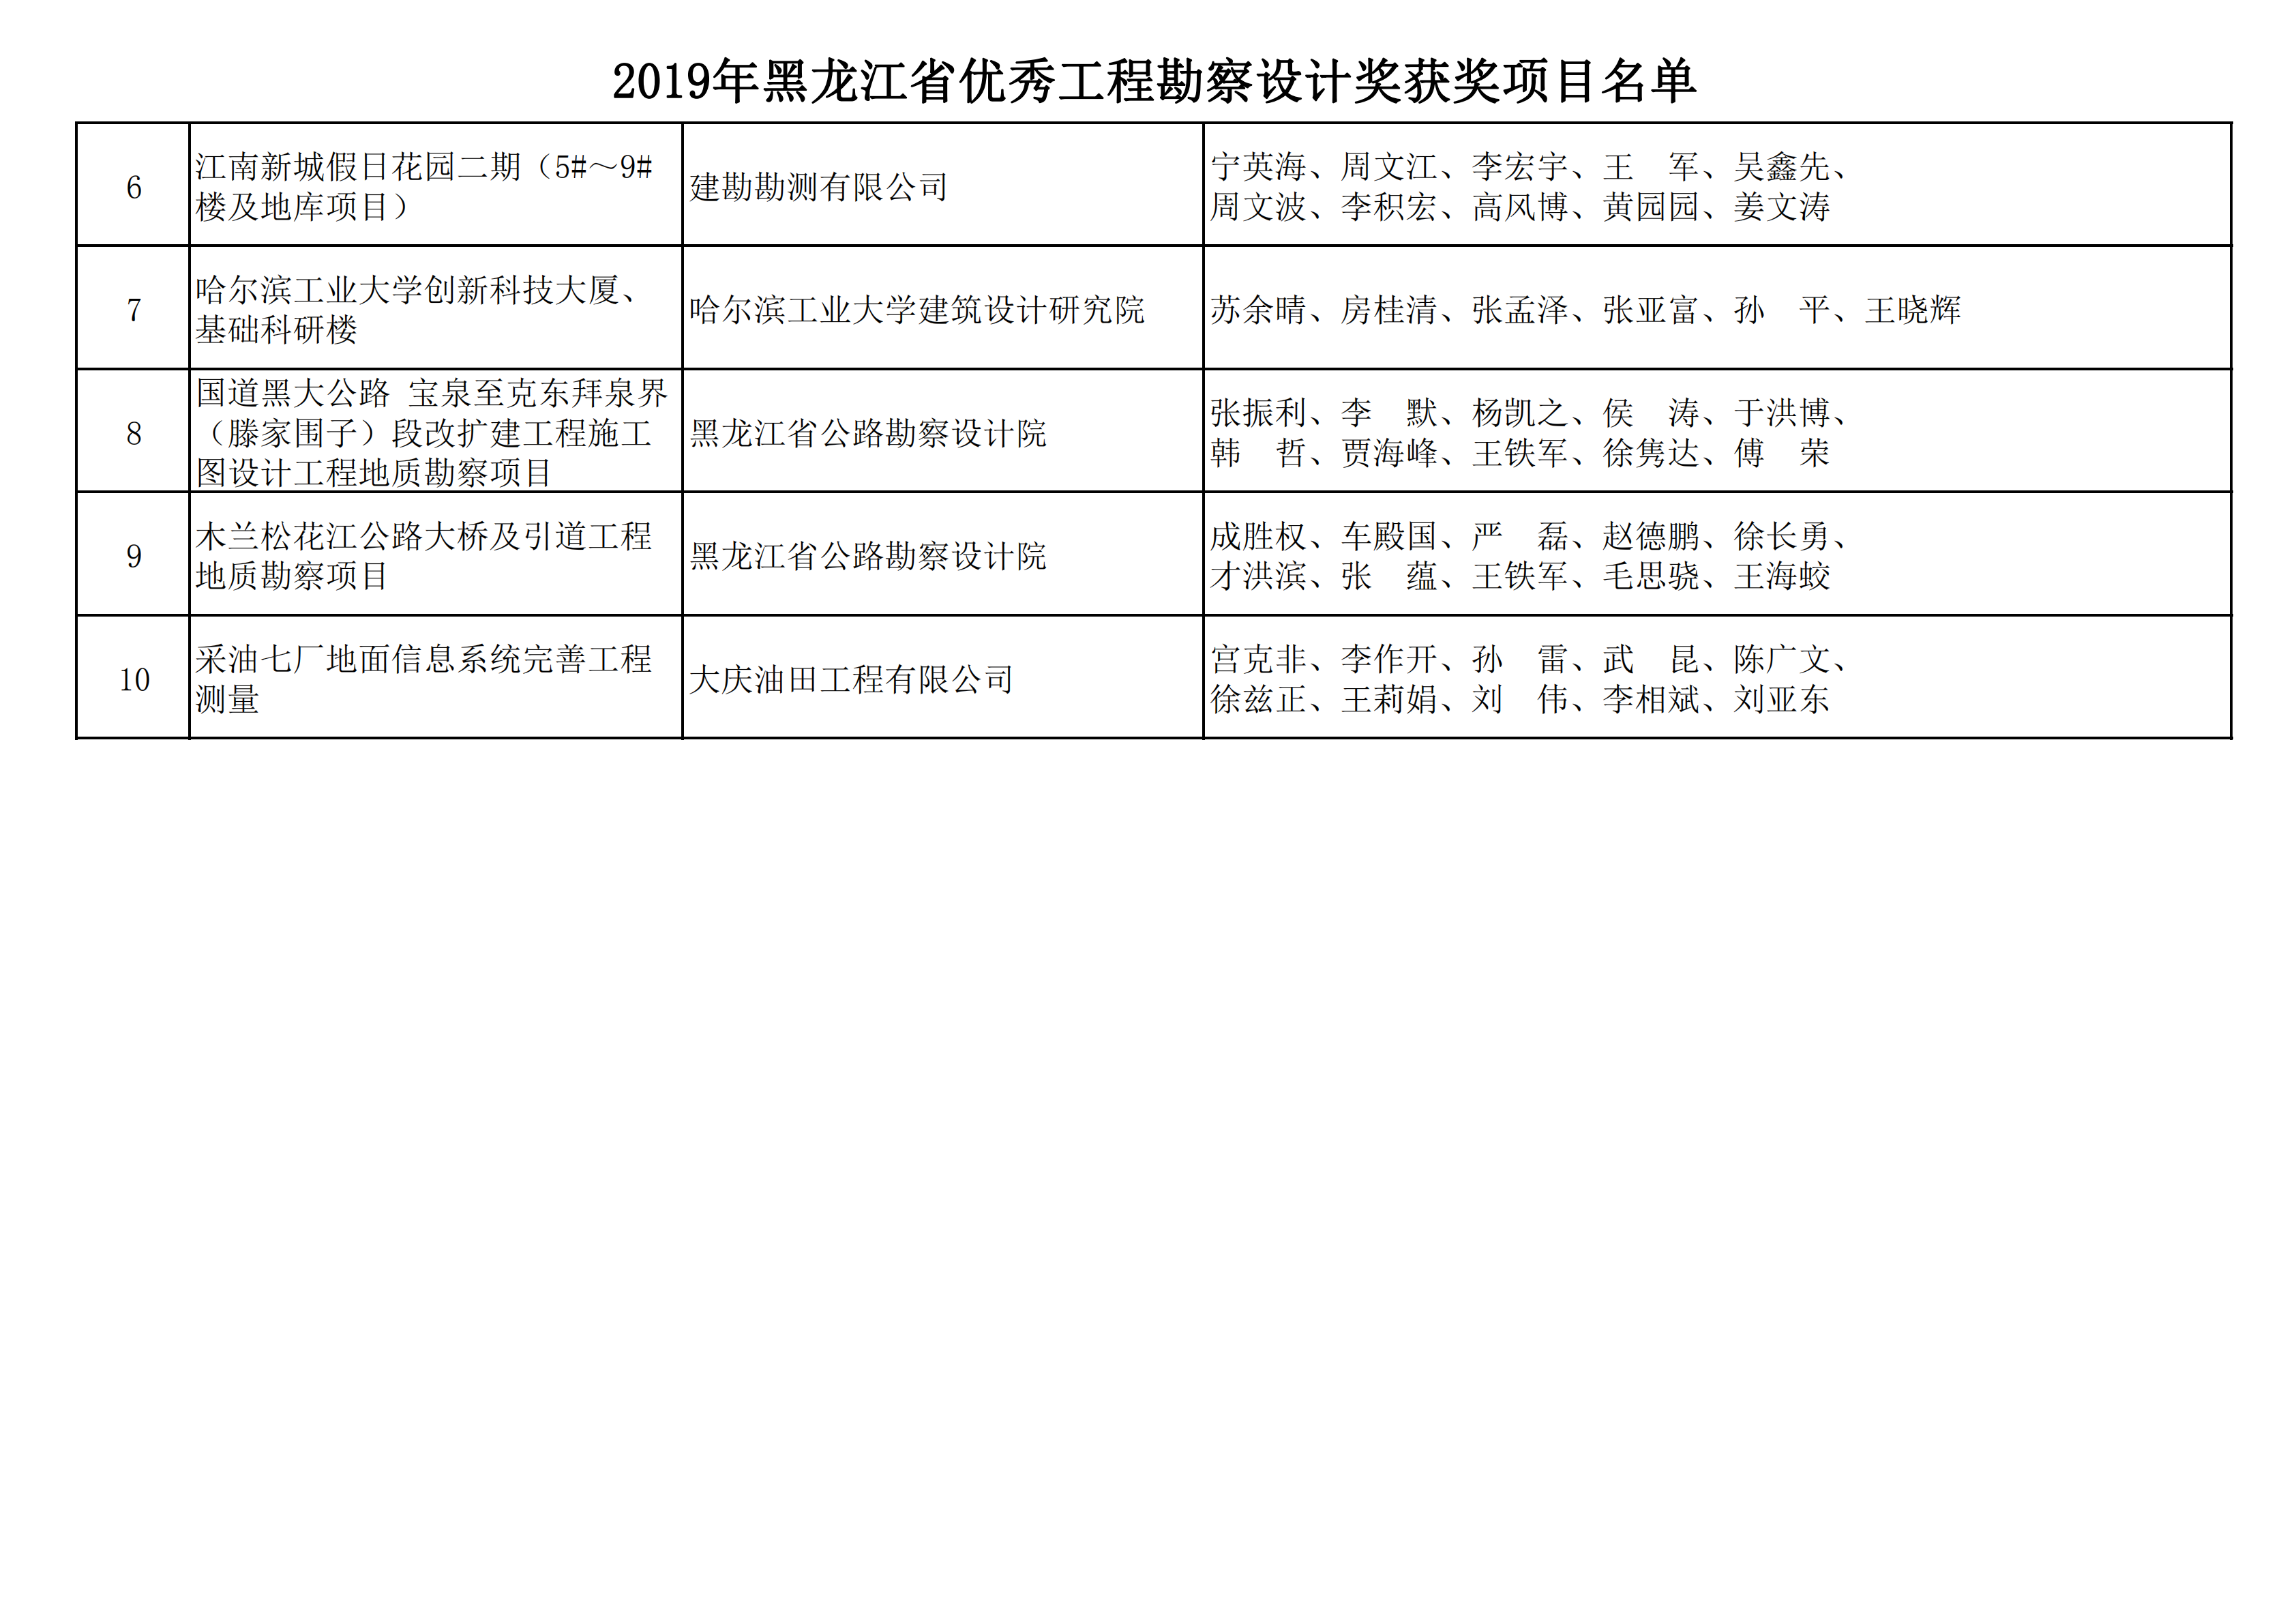 2019年黑龙江省优秀工程勘察设计奖获奖项目名单_23.png